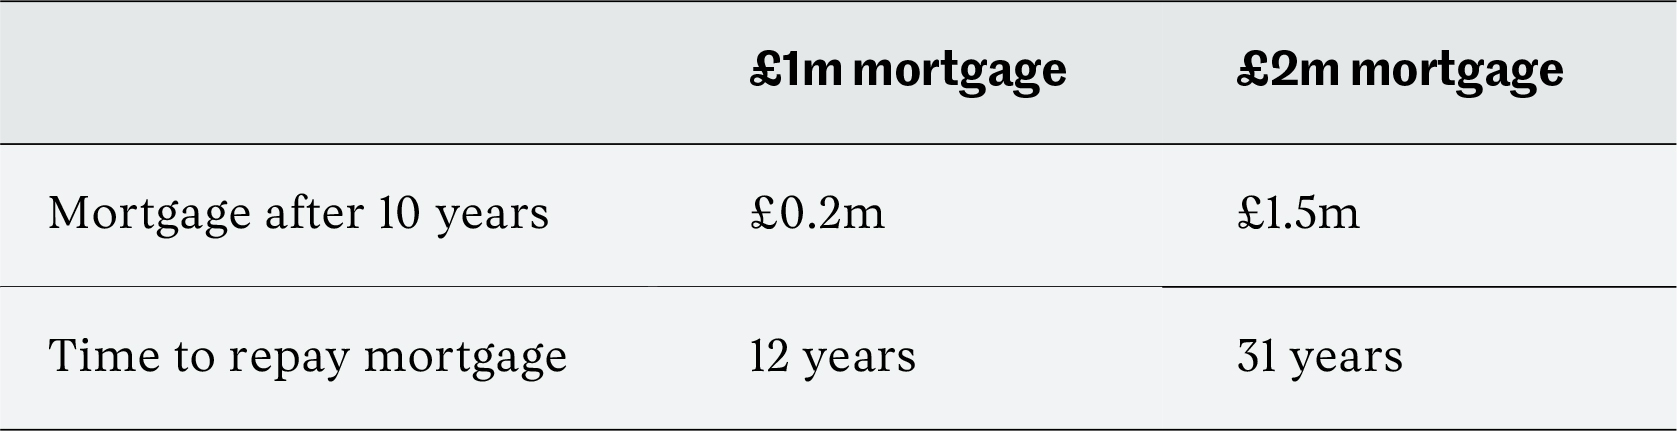 Mortgage duration comparison